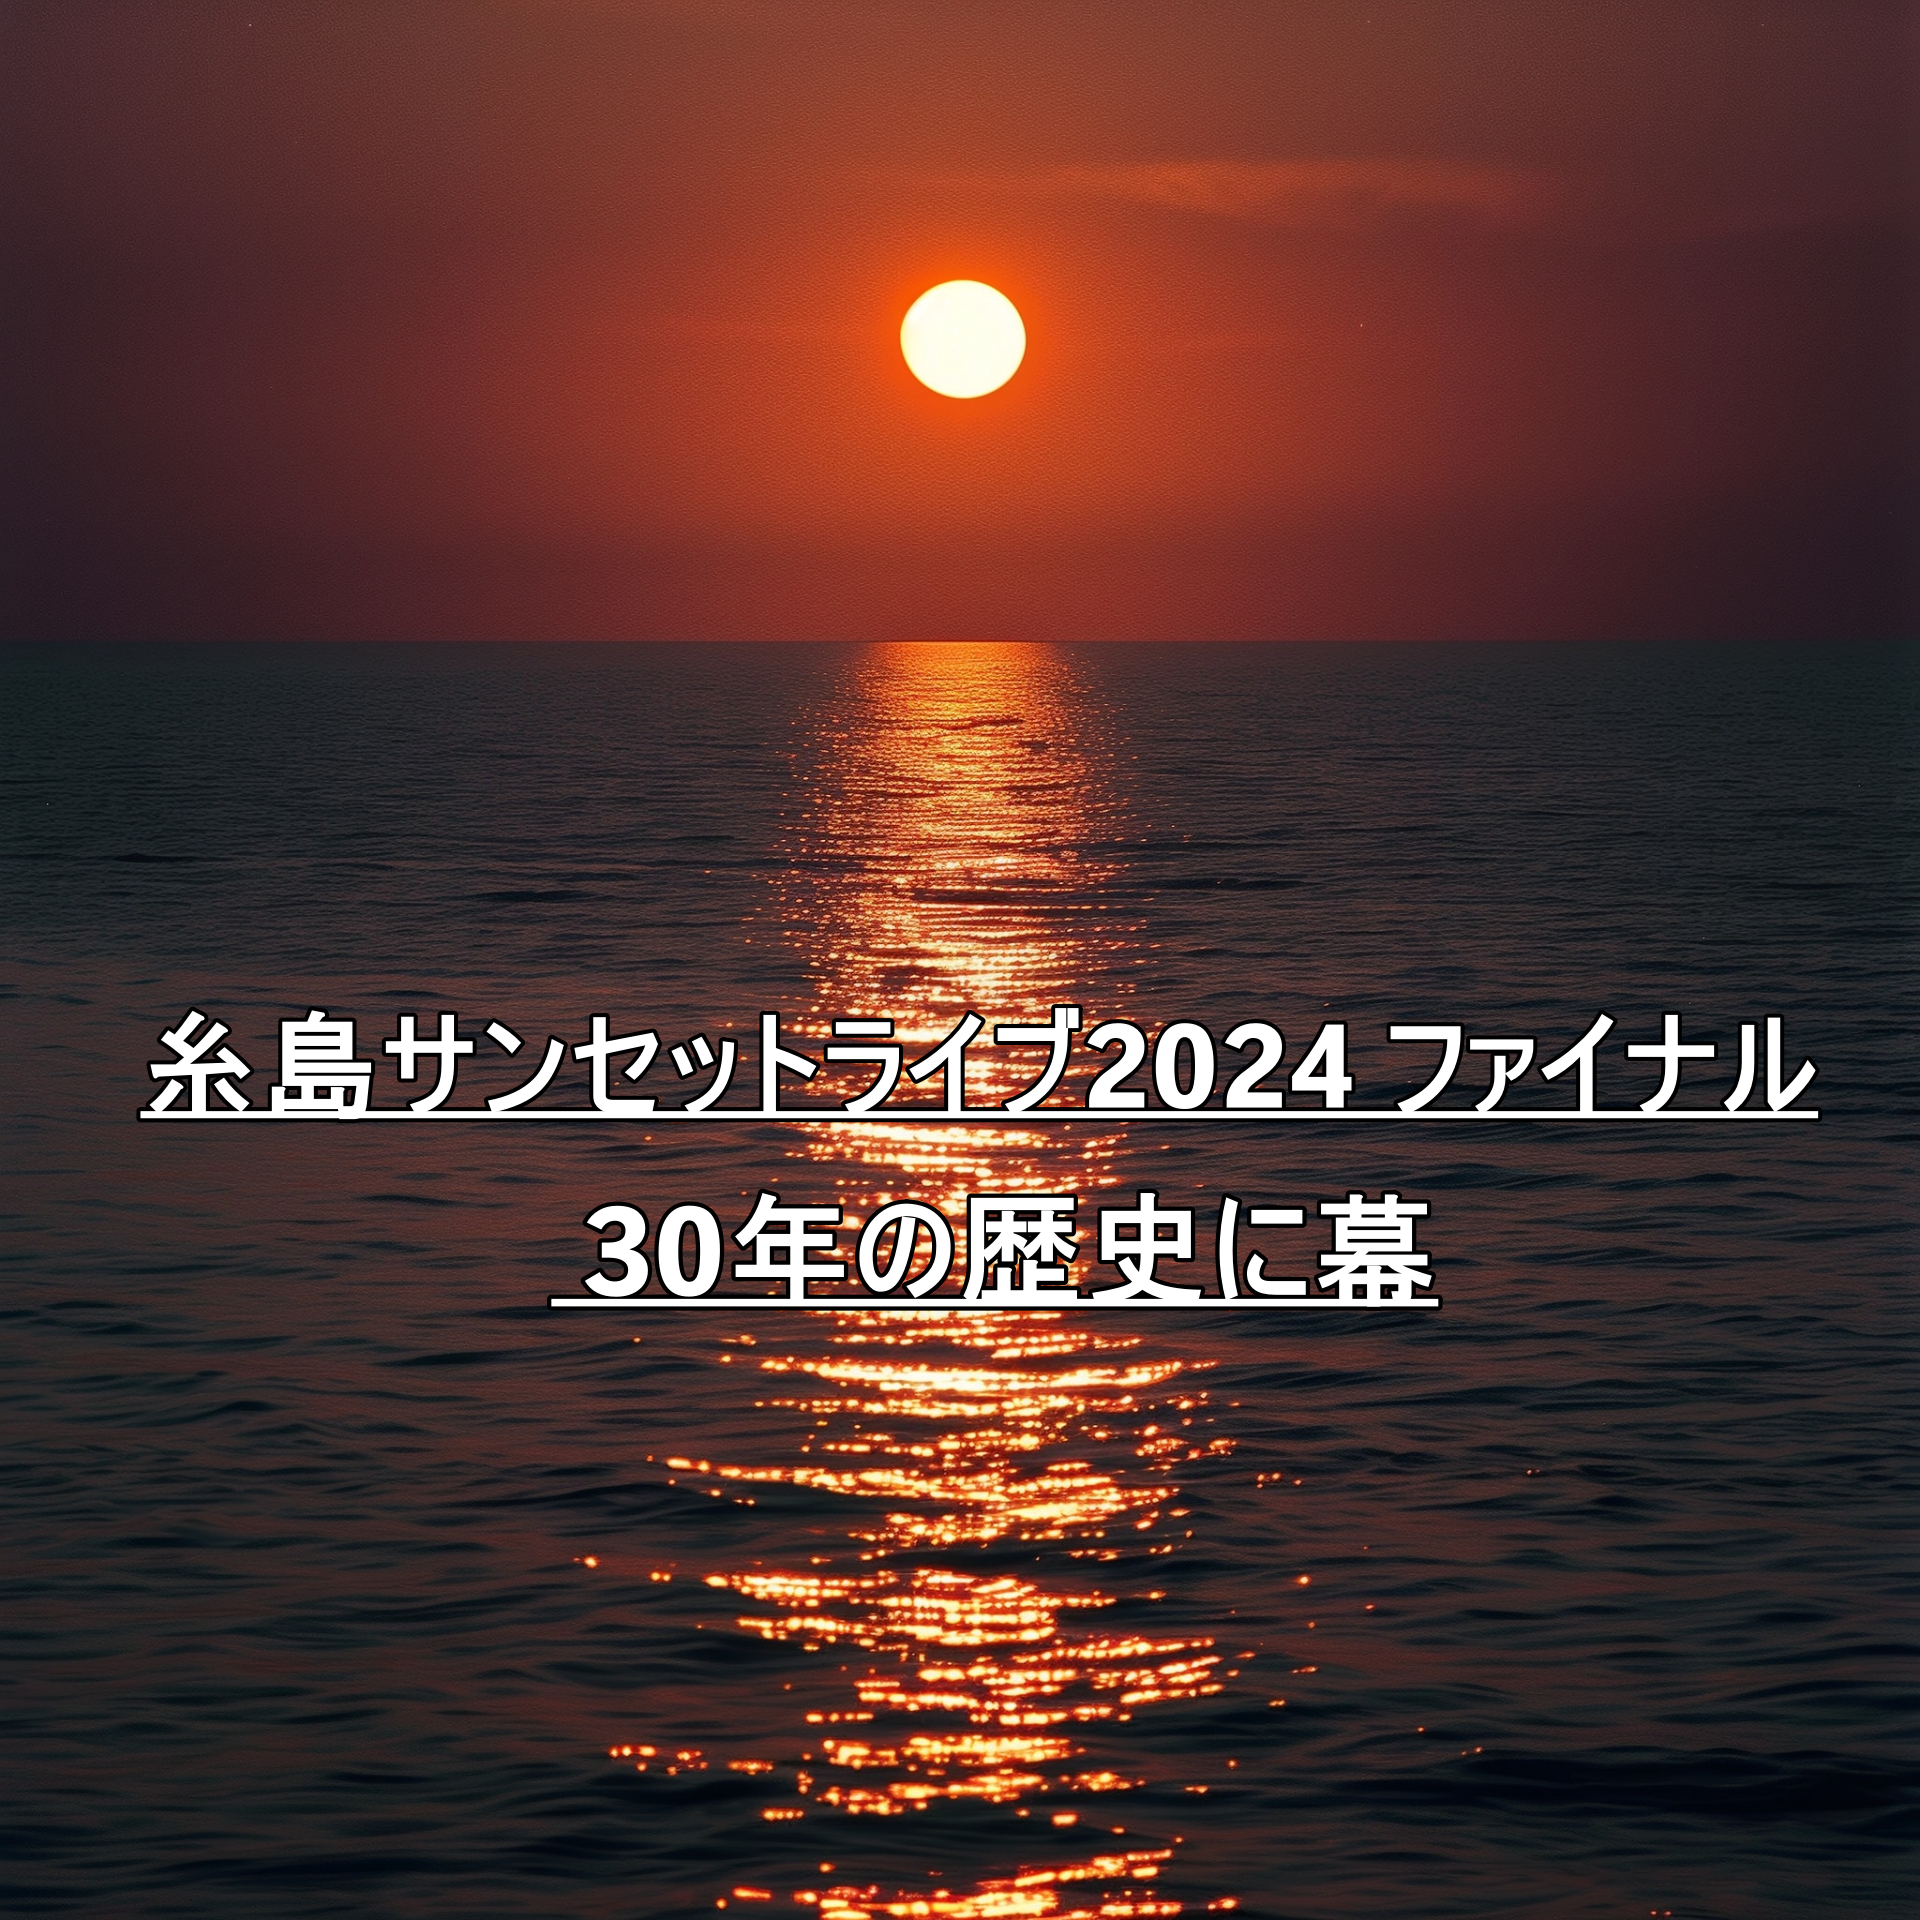 糸島サンセットライブ2024 ファイナル